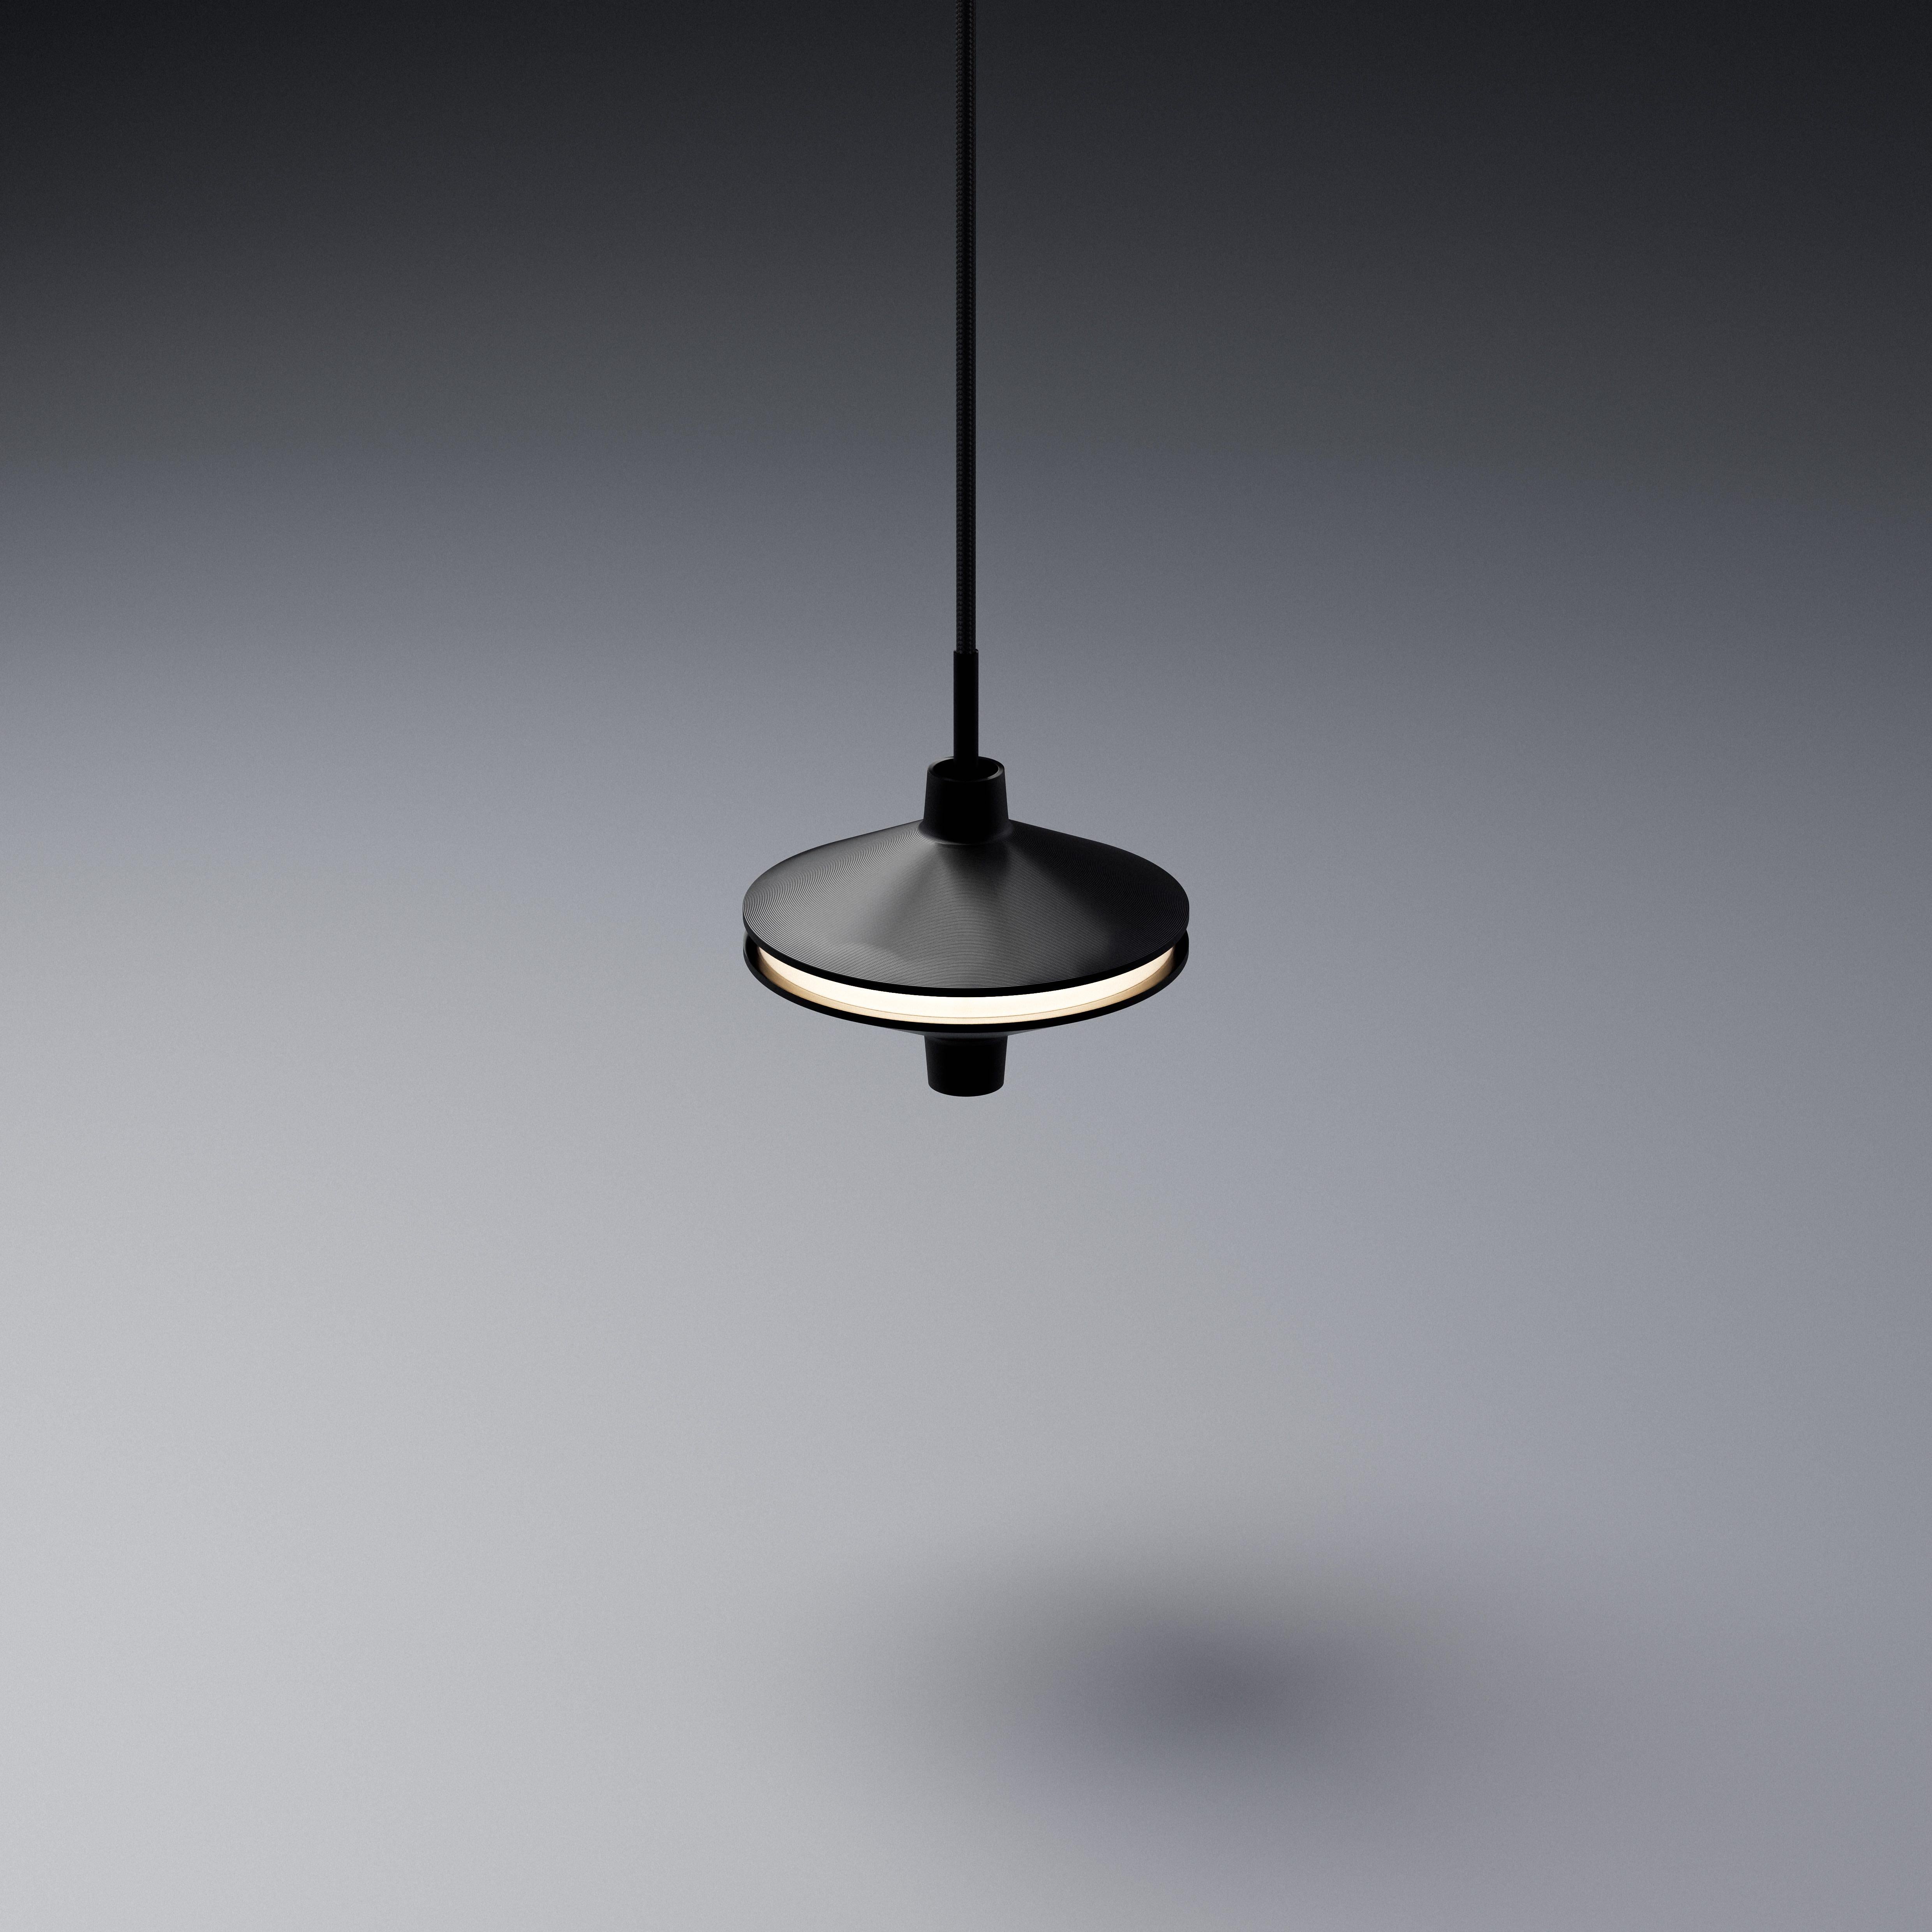 Snua Lamp von Erwan Louis ist eine elegante Verschmelzung von Form und Funktion, inspiriert von der Nostalgie der Kindheit. Diese exquisite Leuchte, die sowohl als Decken- als auch als Tischleuchte erhältlich ist, besticht durch ihr schlankes Design